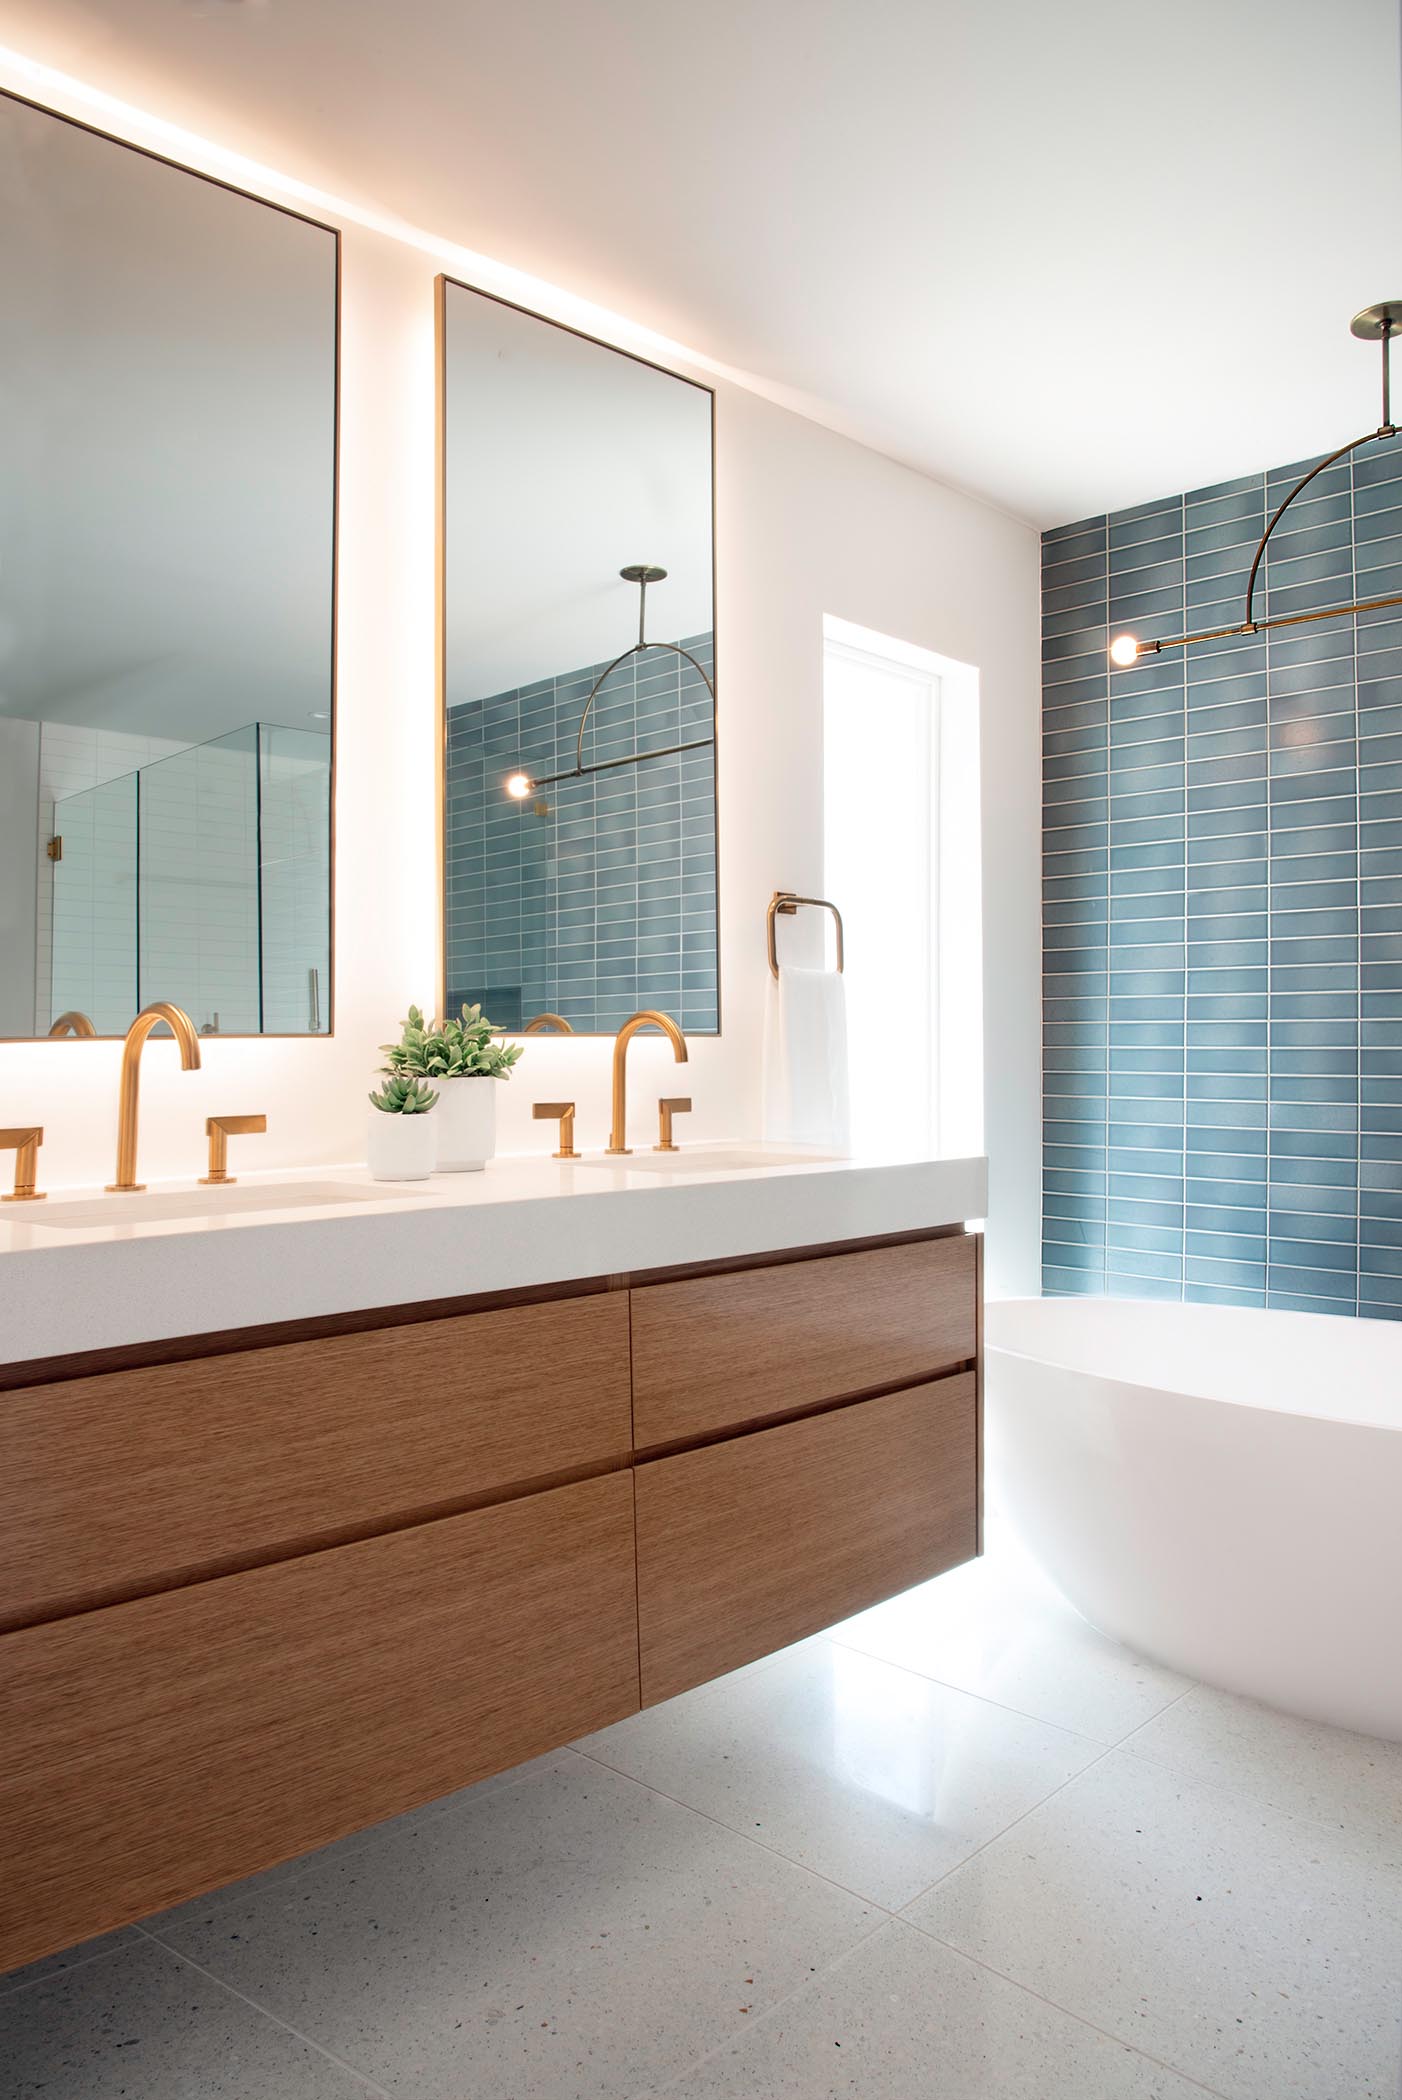 Эта современная ванная комната включает настенный деревянный туалетный столик, сине-белую прямоугольную настенную плитку, минималистичный светильник, зеркала с подсветкой, отдельно стоящую белую ванну и латунные светильники.